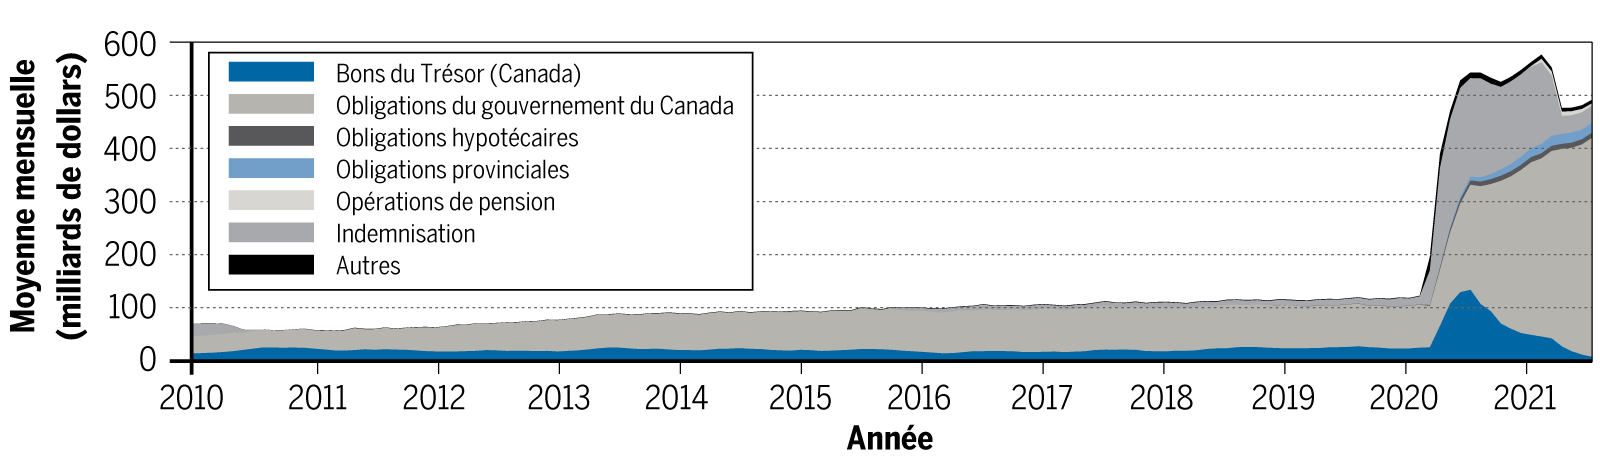 Bilan d’actif de la Banque du Canada